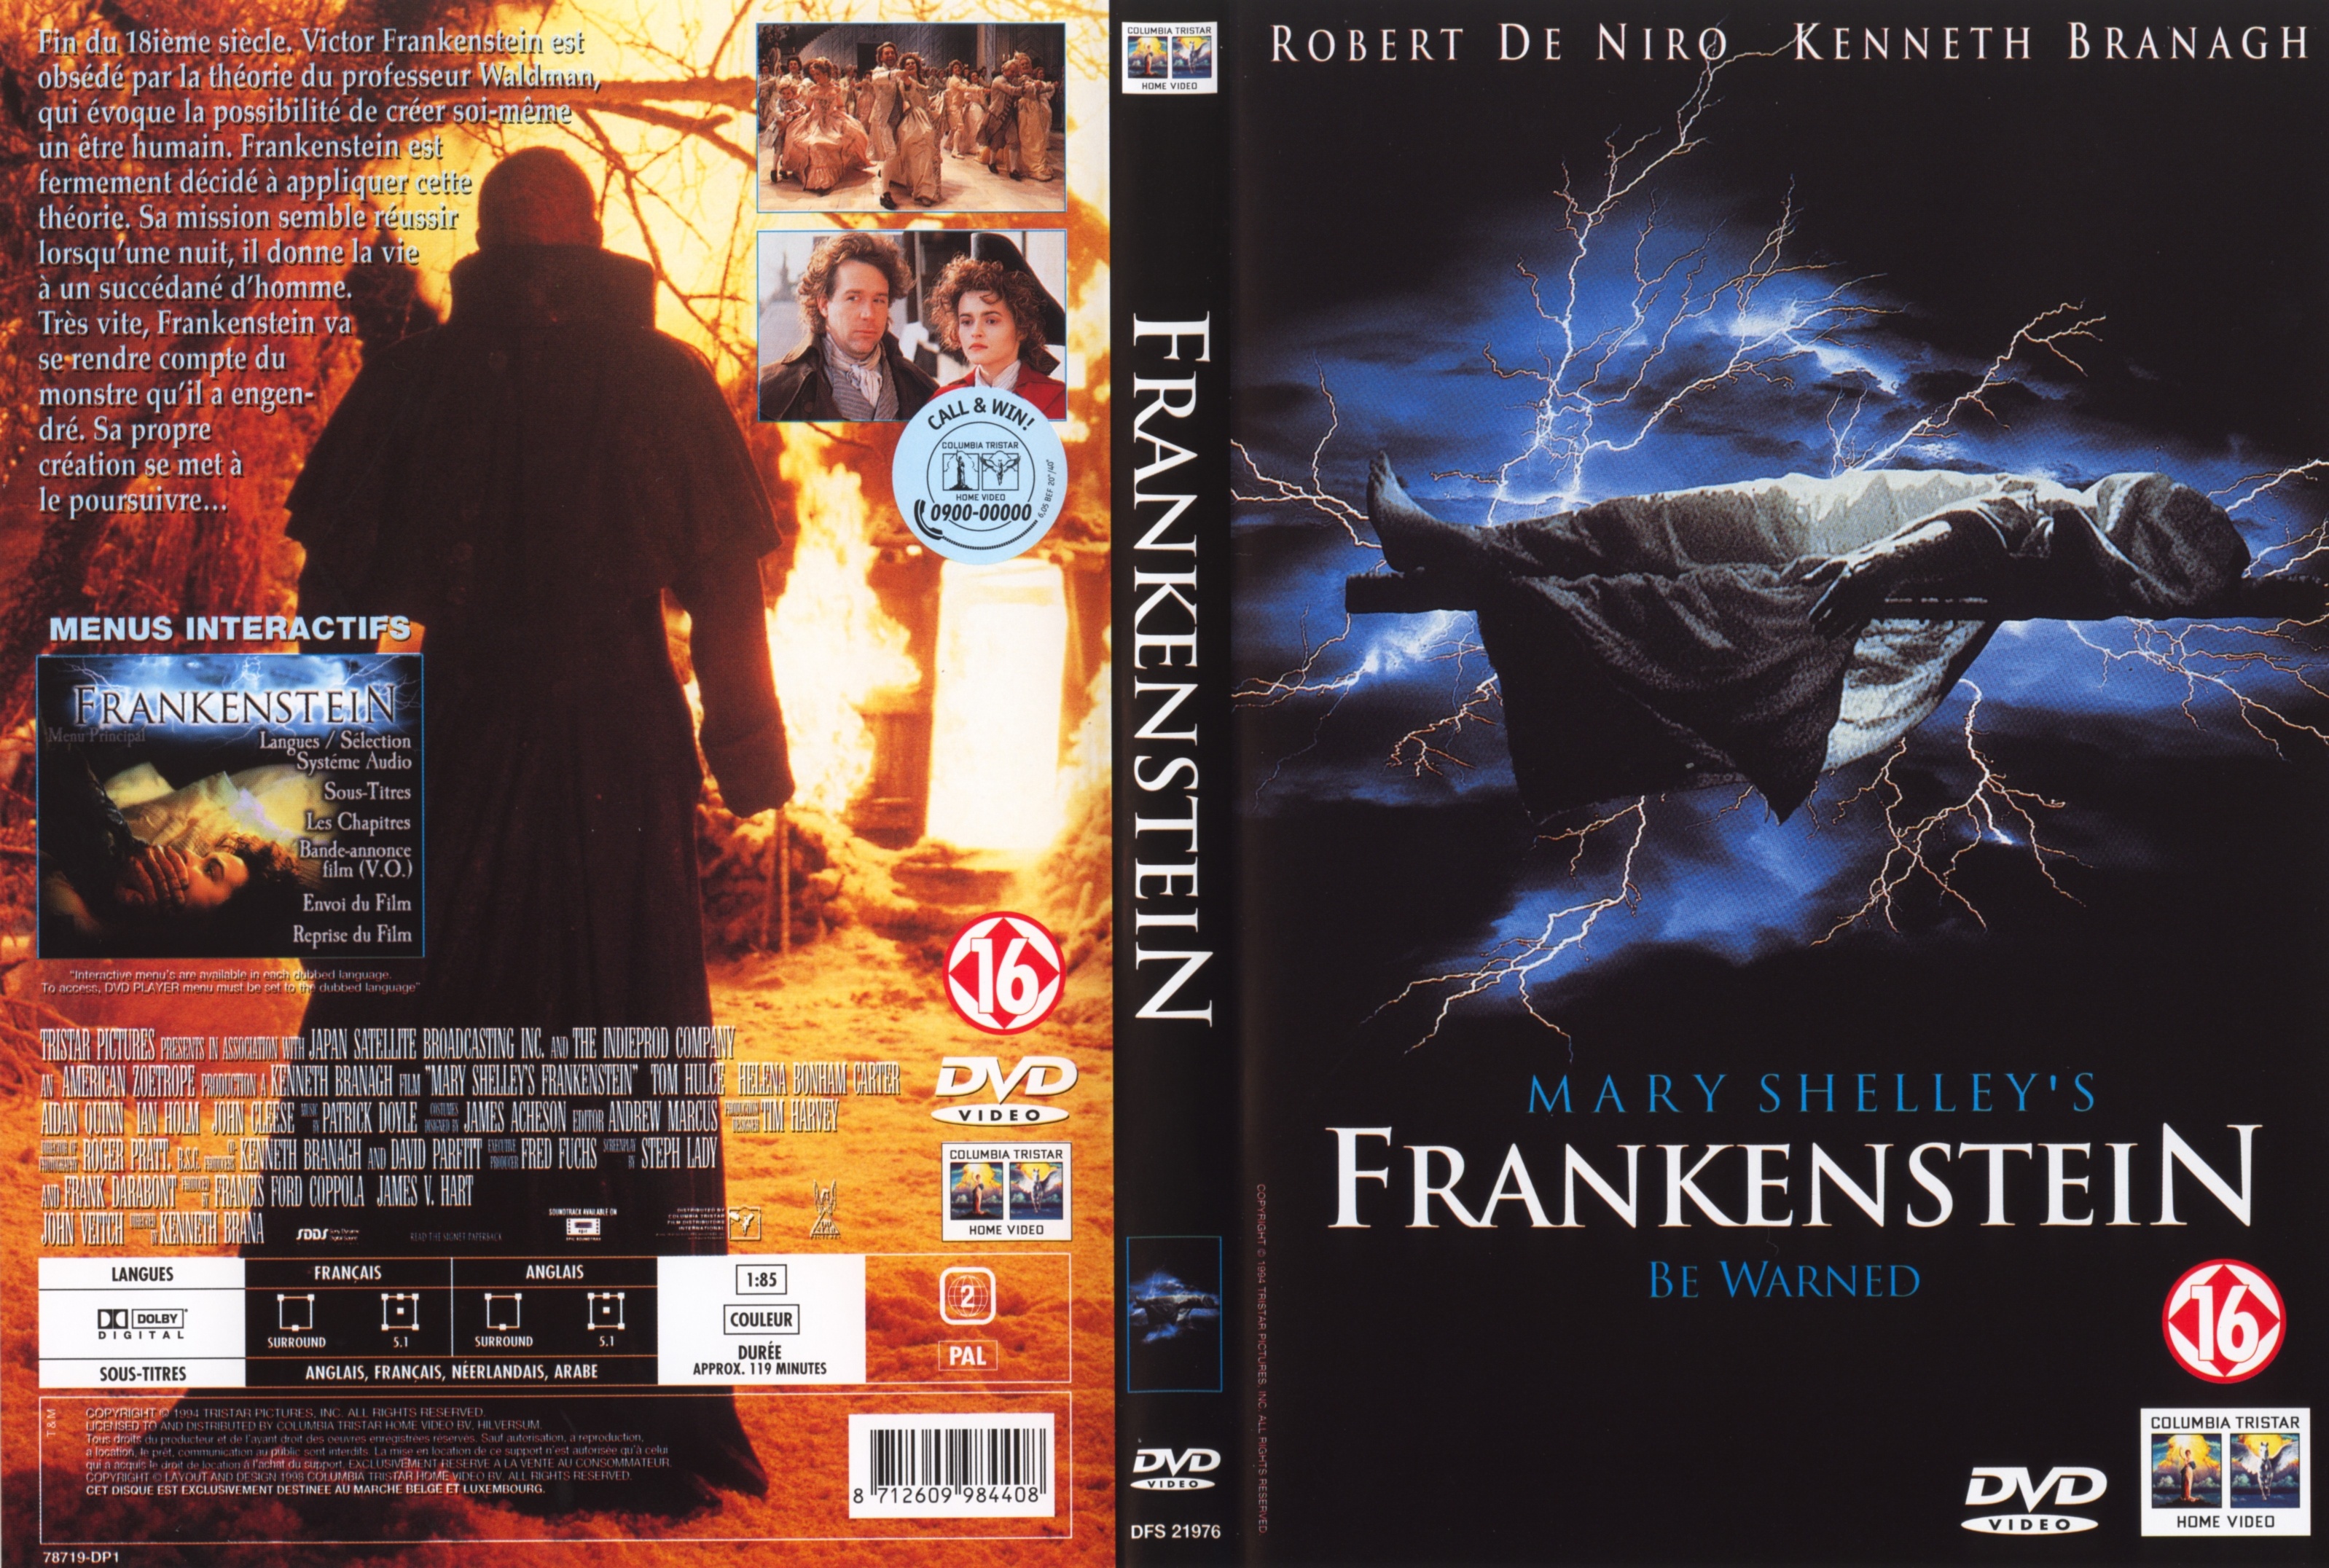 Jaquette DVD Frankenstein (Robert De Niro)